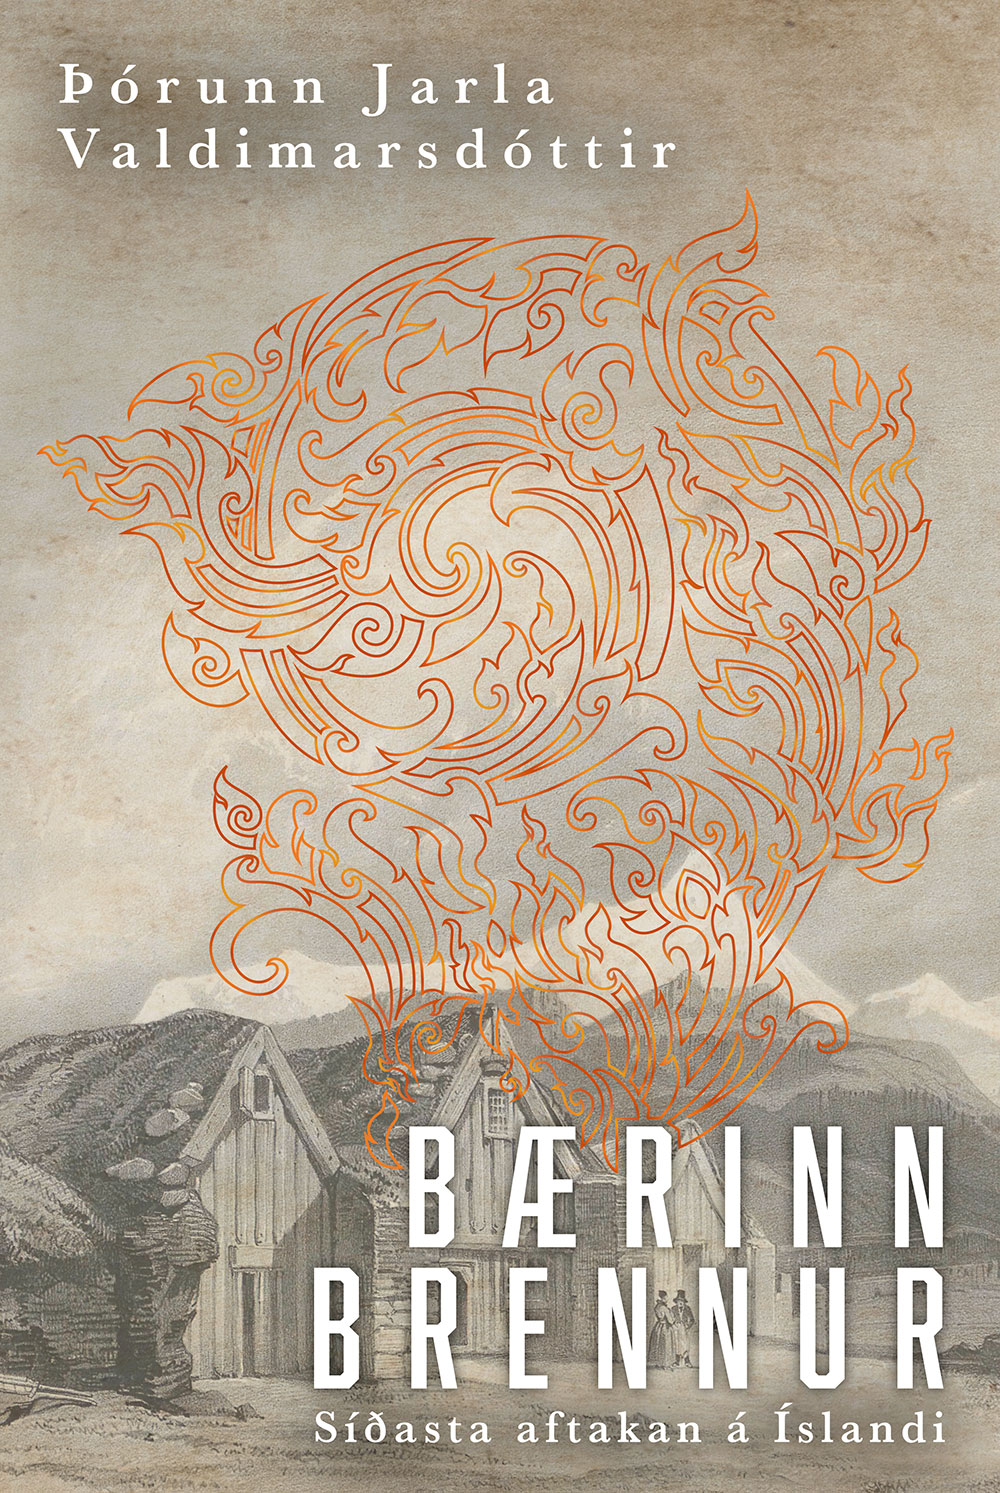 Bærinn brennur (The Burning of the Farm)